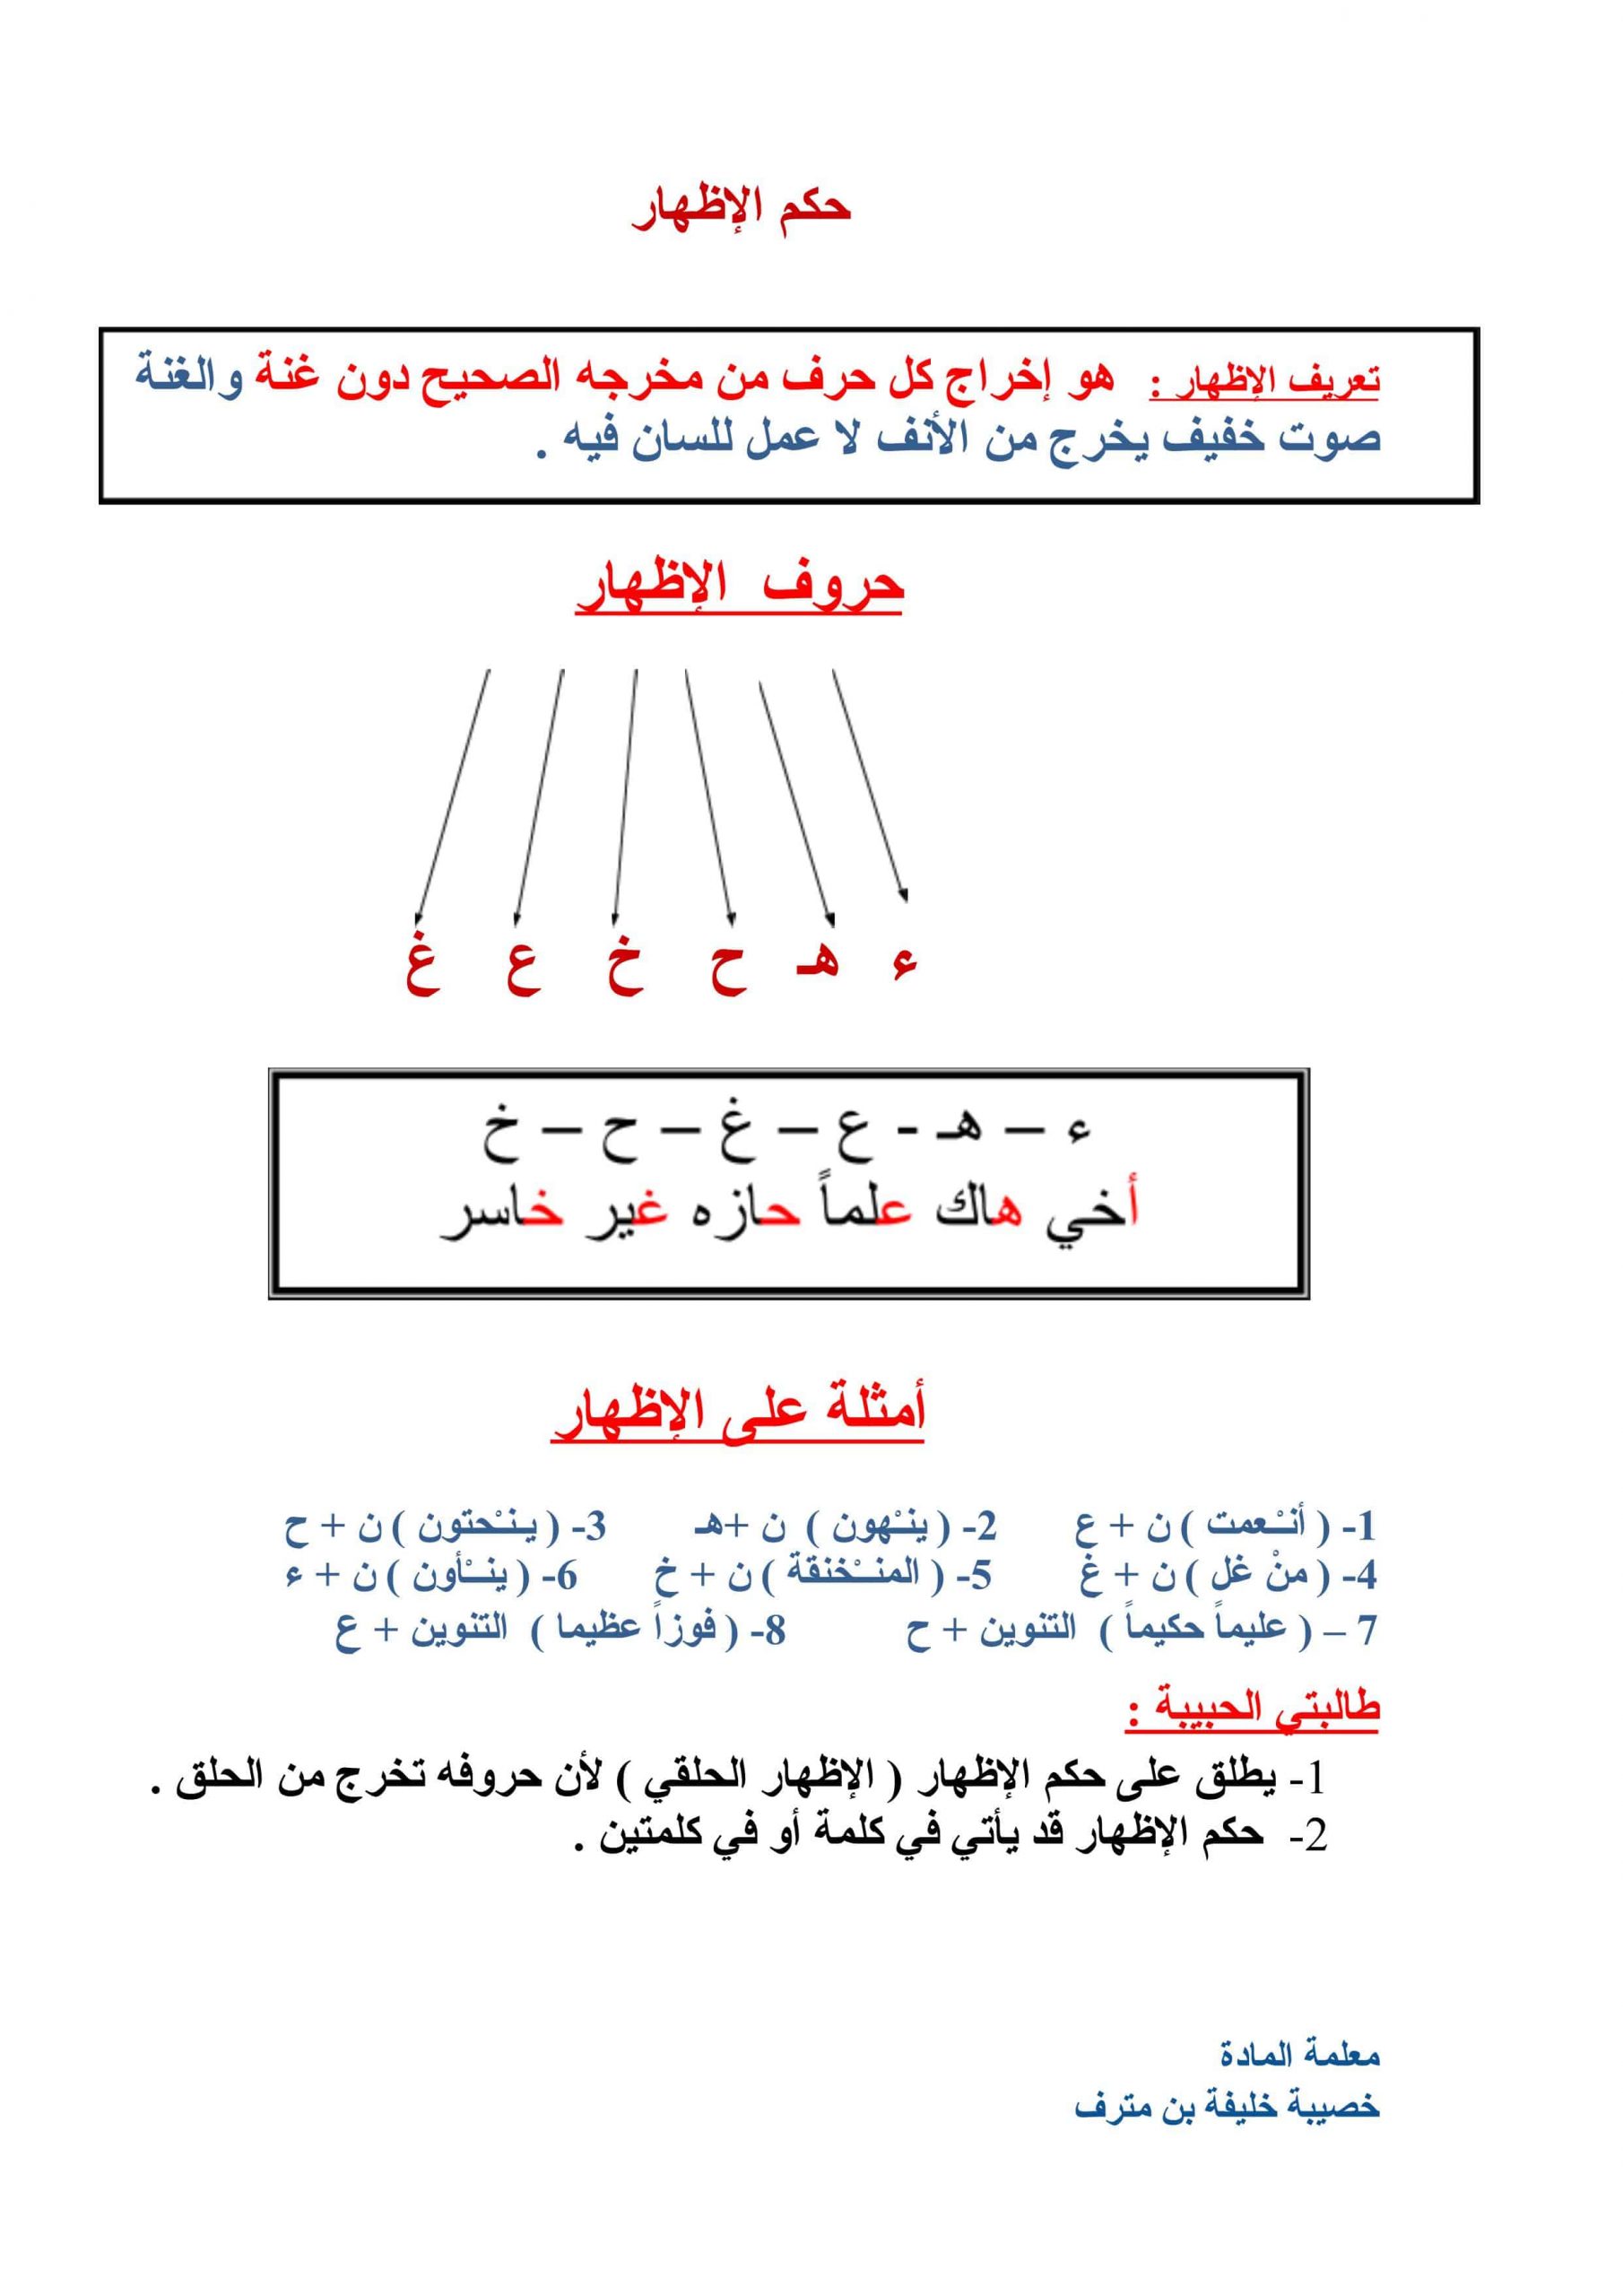 ملخص وشرح حكم الاظهار الصف السادس مادة التربية الاسلامية ملفاتي